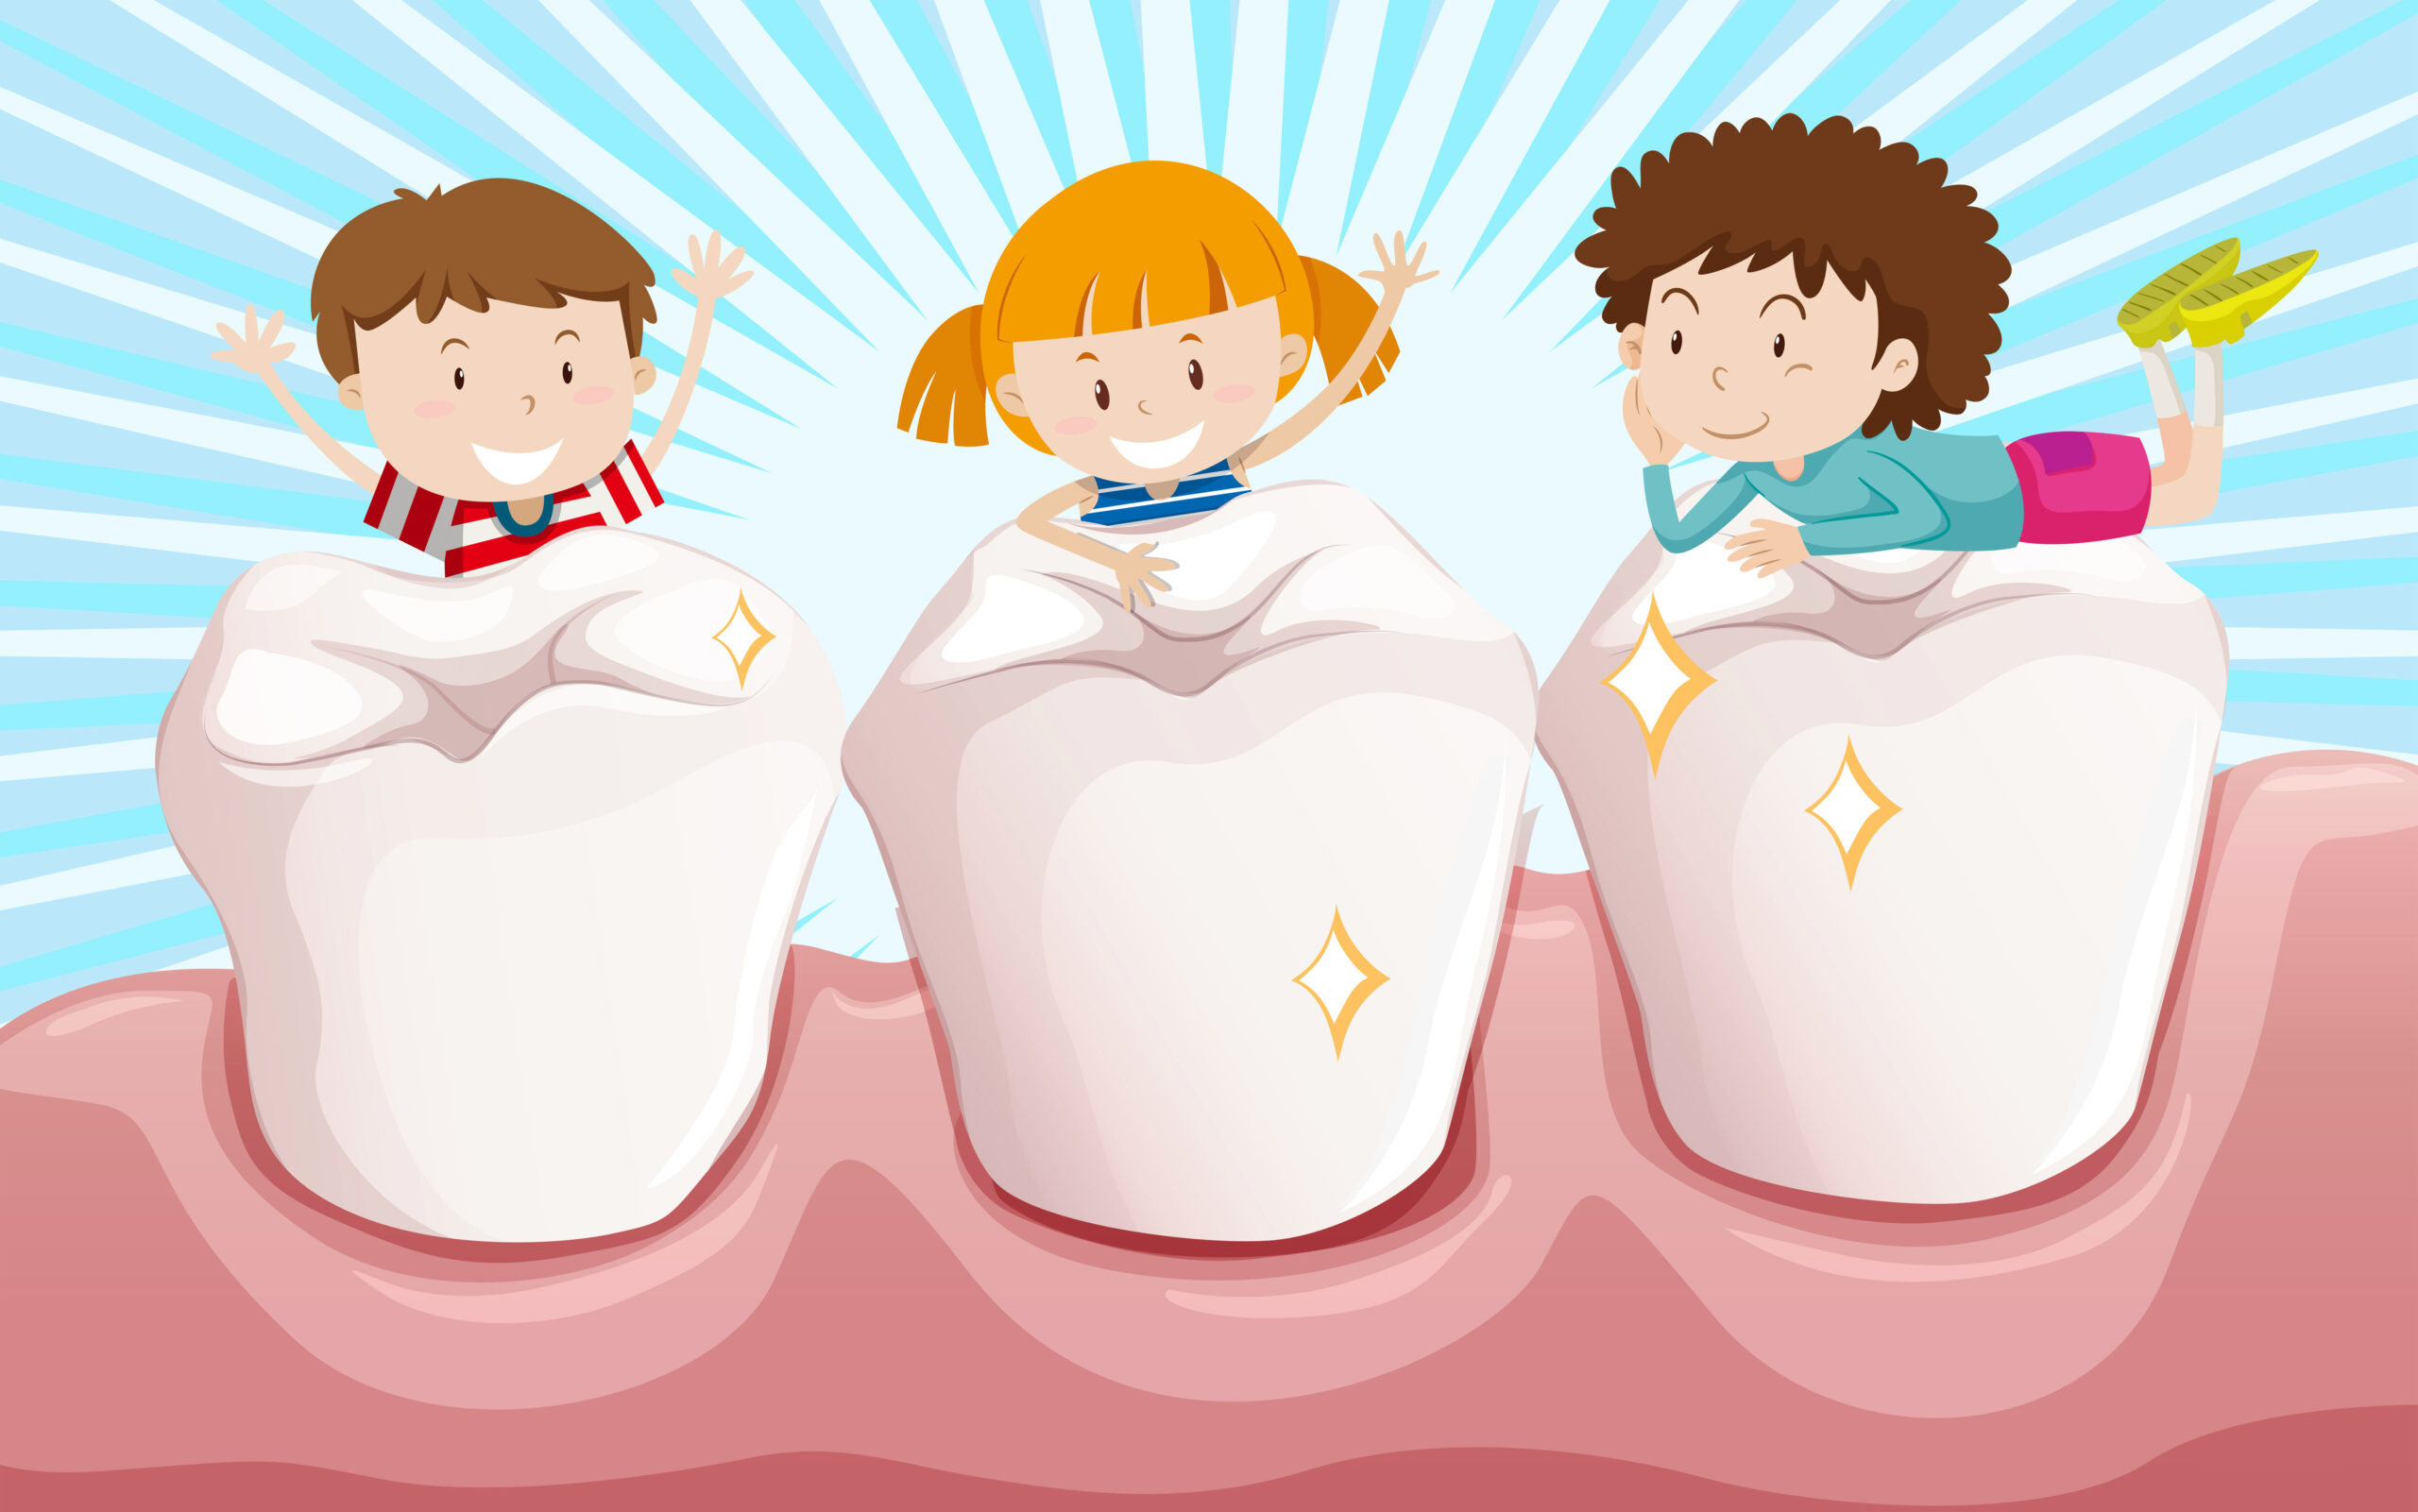 راه های پیشگیری از پوسیدگی دندان های کودکان